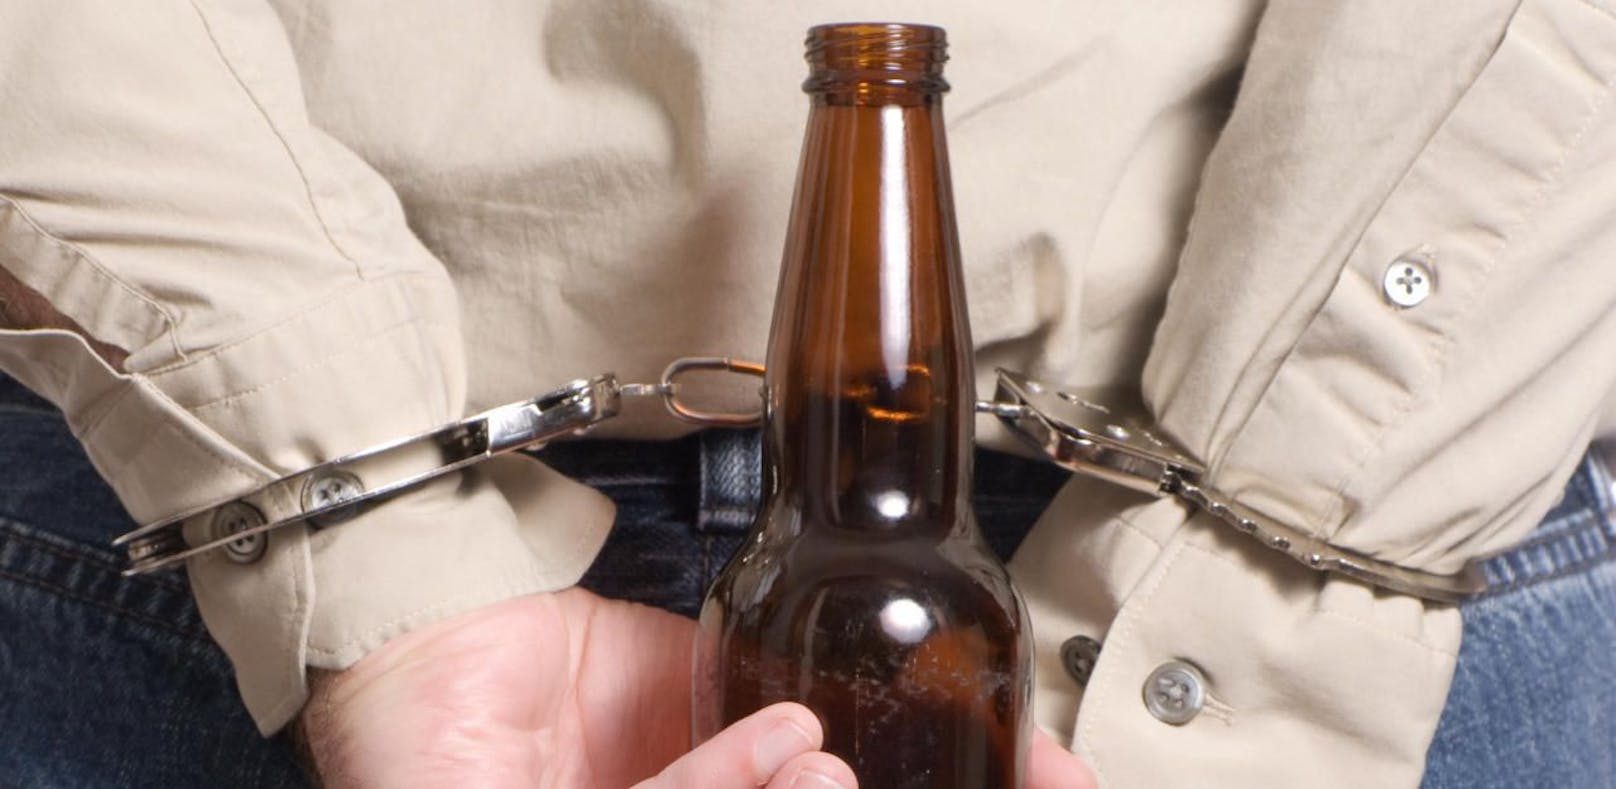 Für ein Bier im Wert von 1,03 Euro ging der gebürtige Deutsche ins Gefängnis.